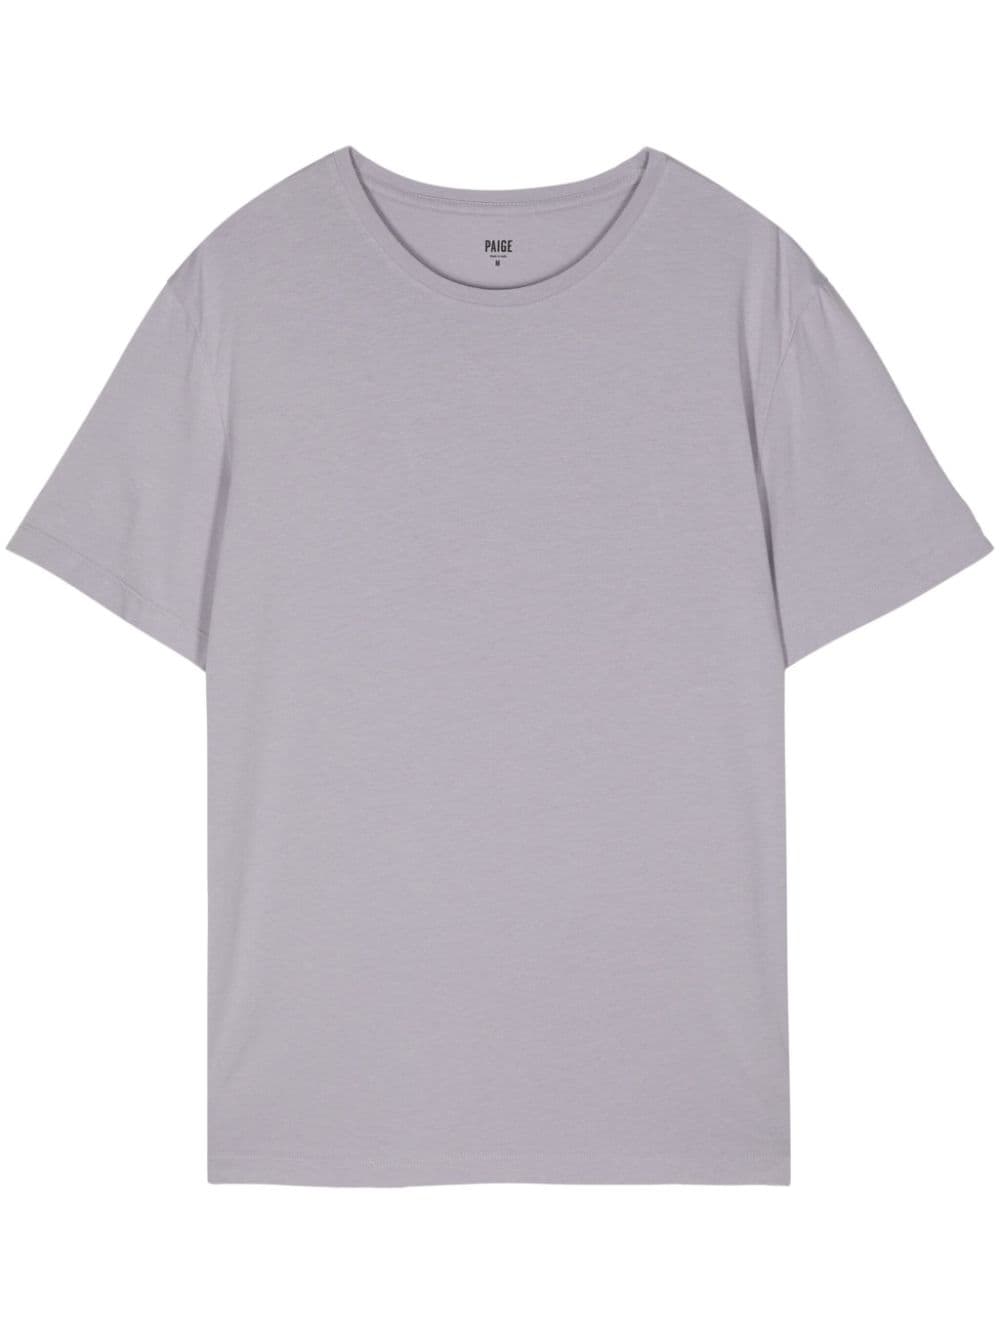 PAIGE cotton-blend t-shirt - Neutrals von PAIGE